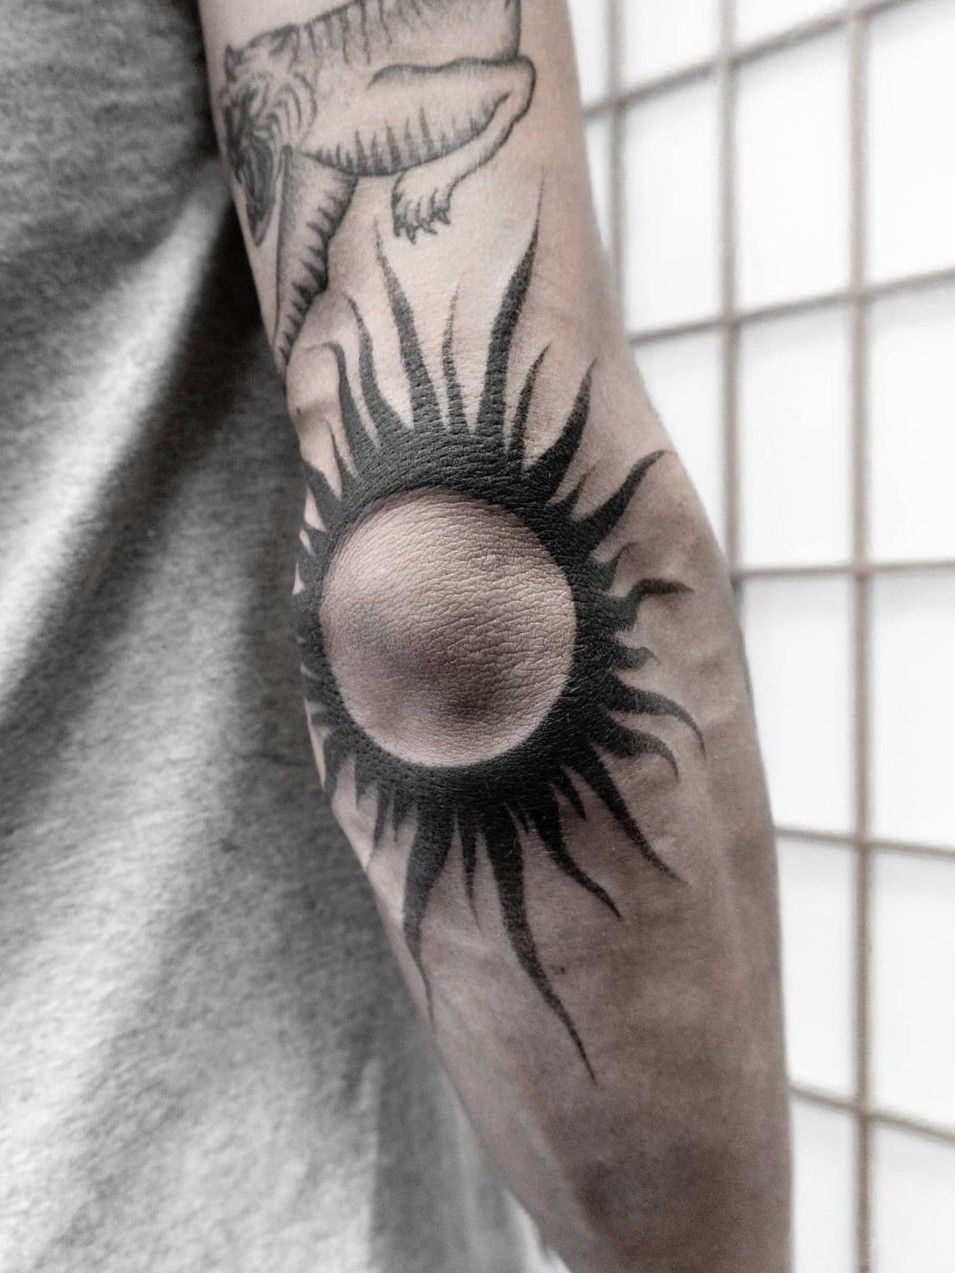 Tattoo uploaded by Olga Tattoos • Black sun ✴ #tattoodo #sun #suntattoo  #blackwork #chesttattoo #blackworkers #blackworktattoos #ttt #tttpublishing  #tttism #london #londontattooist #customtattoo #blackinktattoo #tattoo  #SimpleAndBeautifulTattoo • Tattoodo